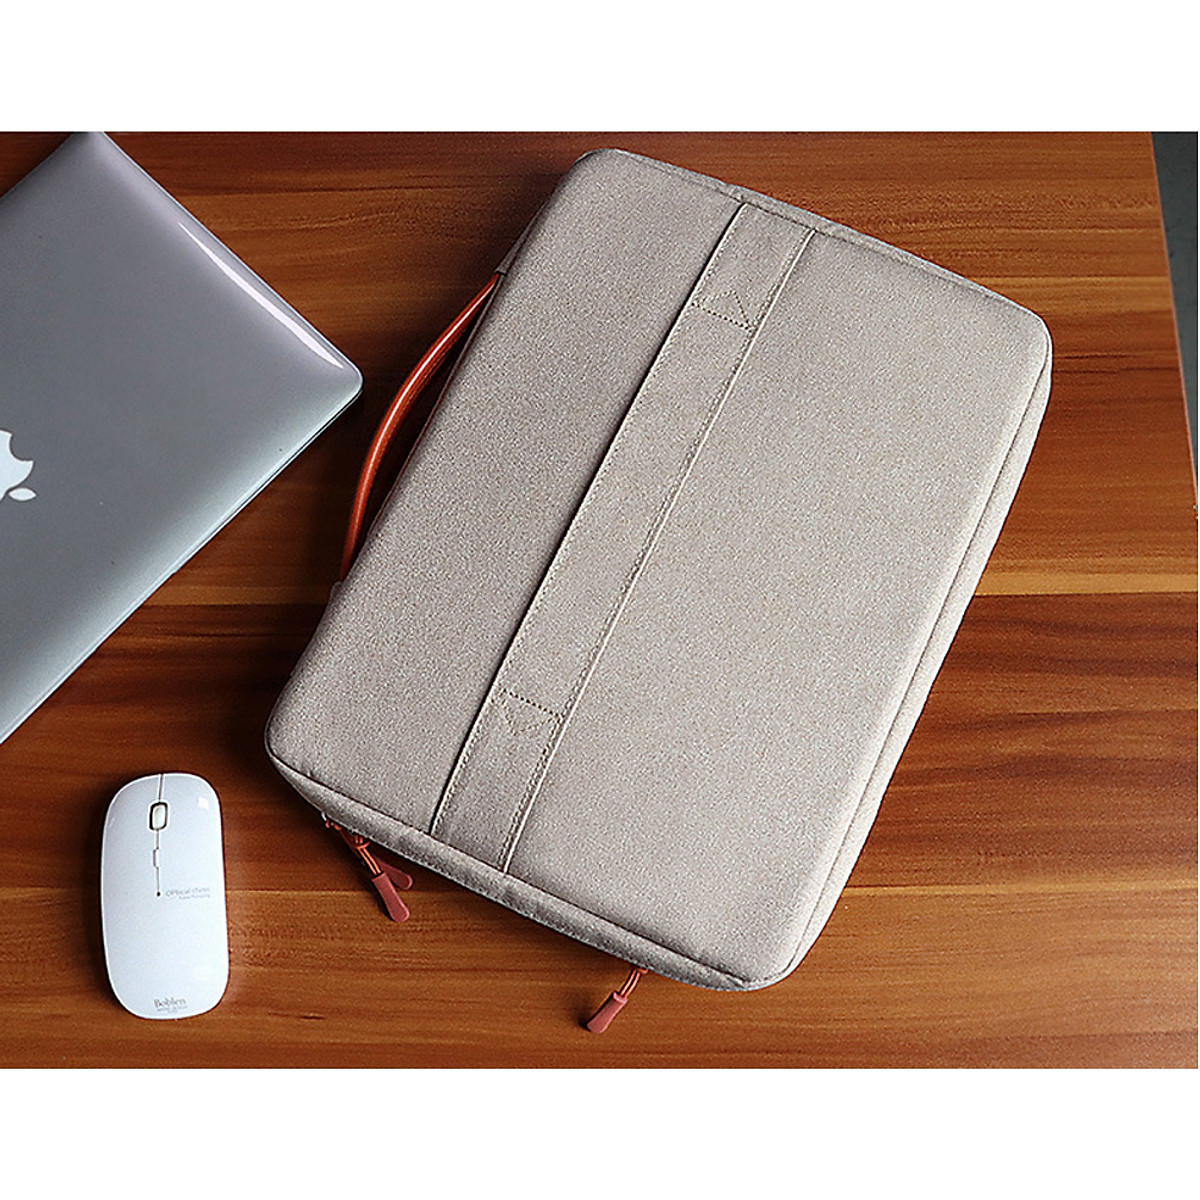 Túi xách - túi chống sốc cho laptop 13.3 INCH cao cấp phong cách mới - TL0127